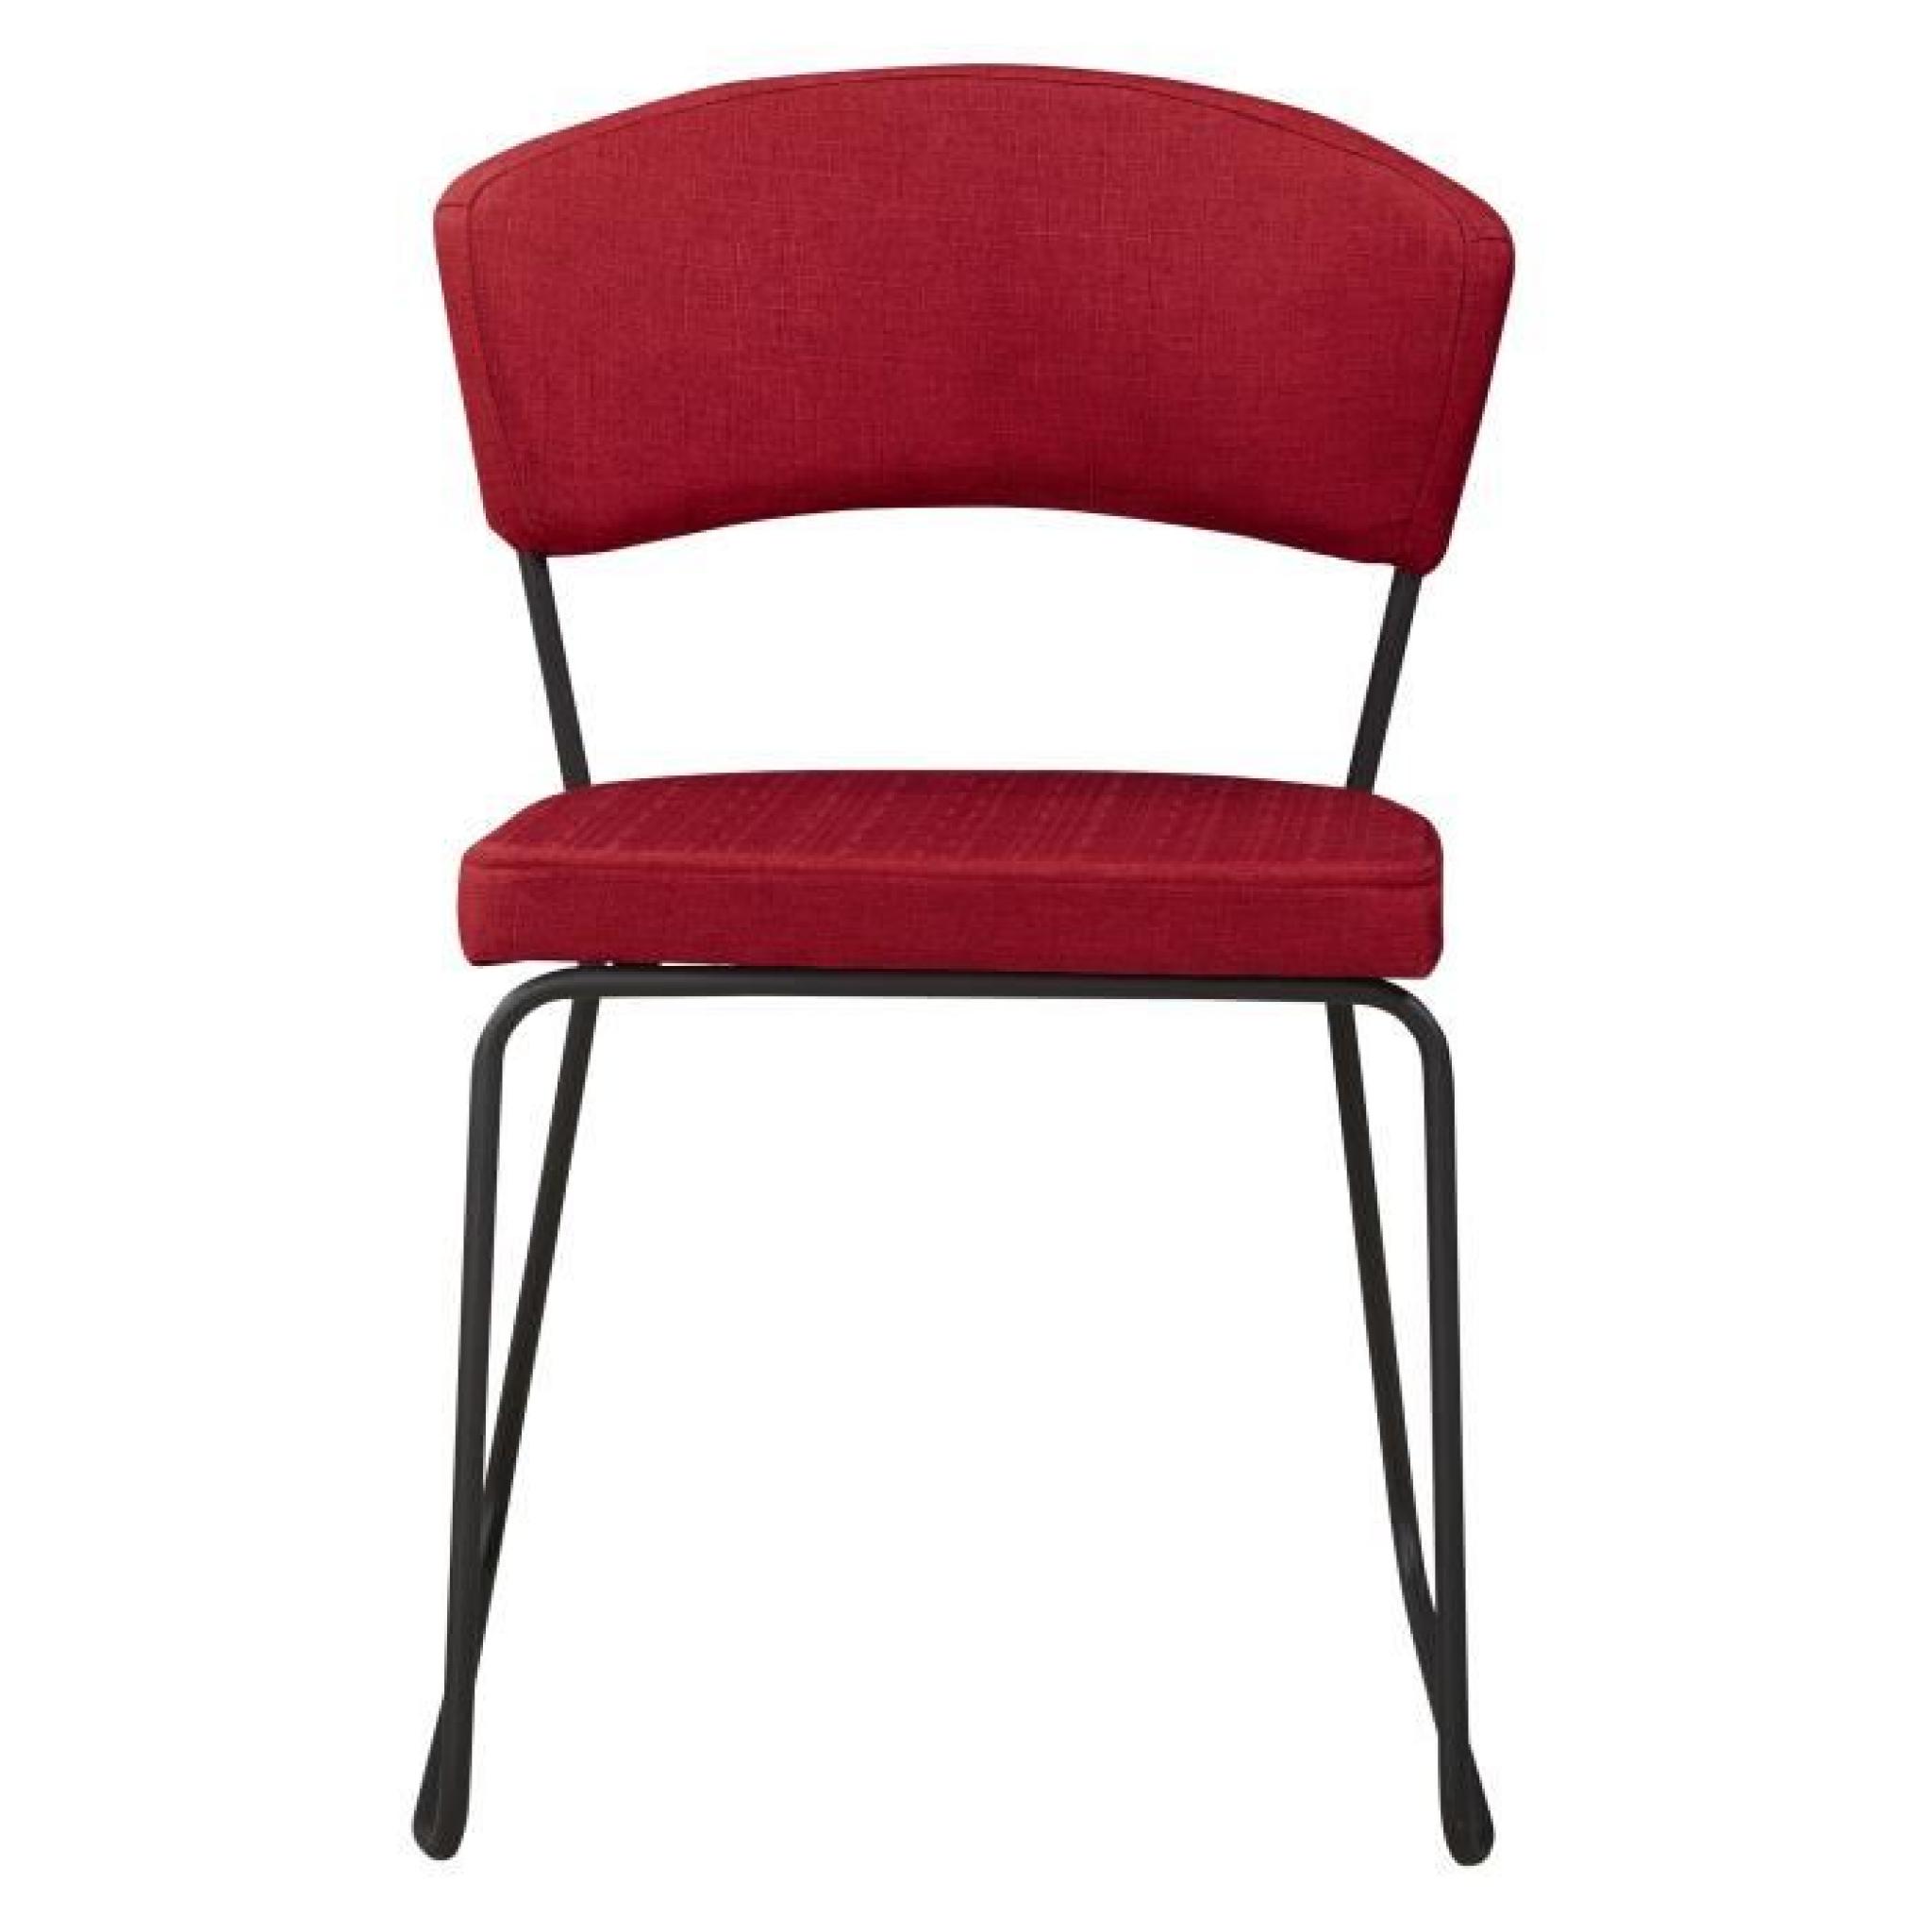 Chaise design minimaliste en tissus coloris rouge cinabre pas cher